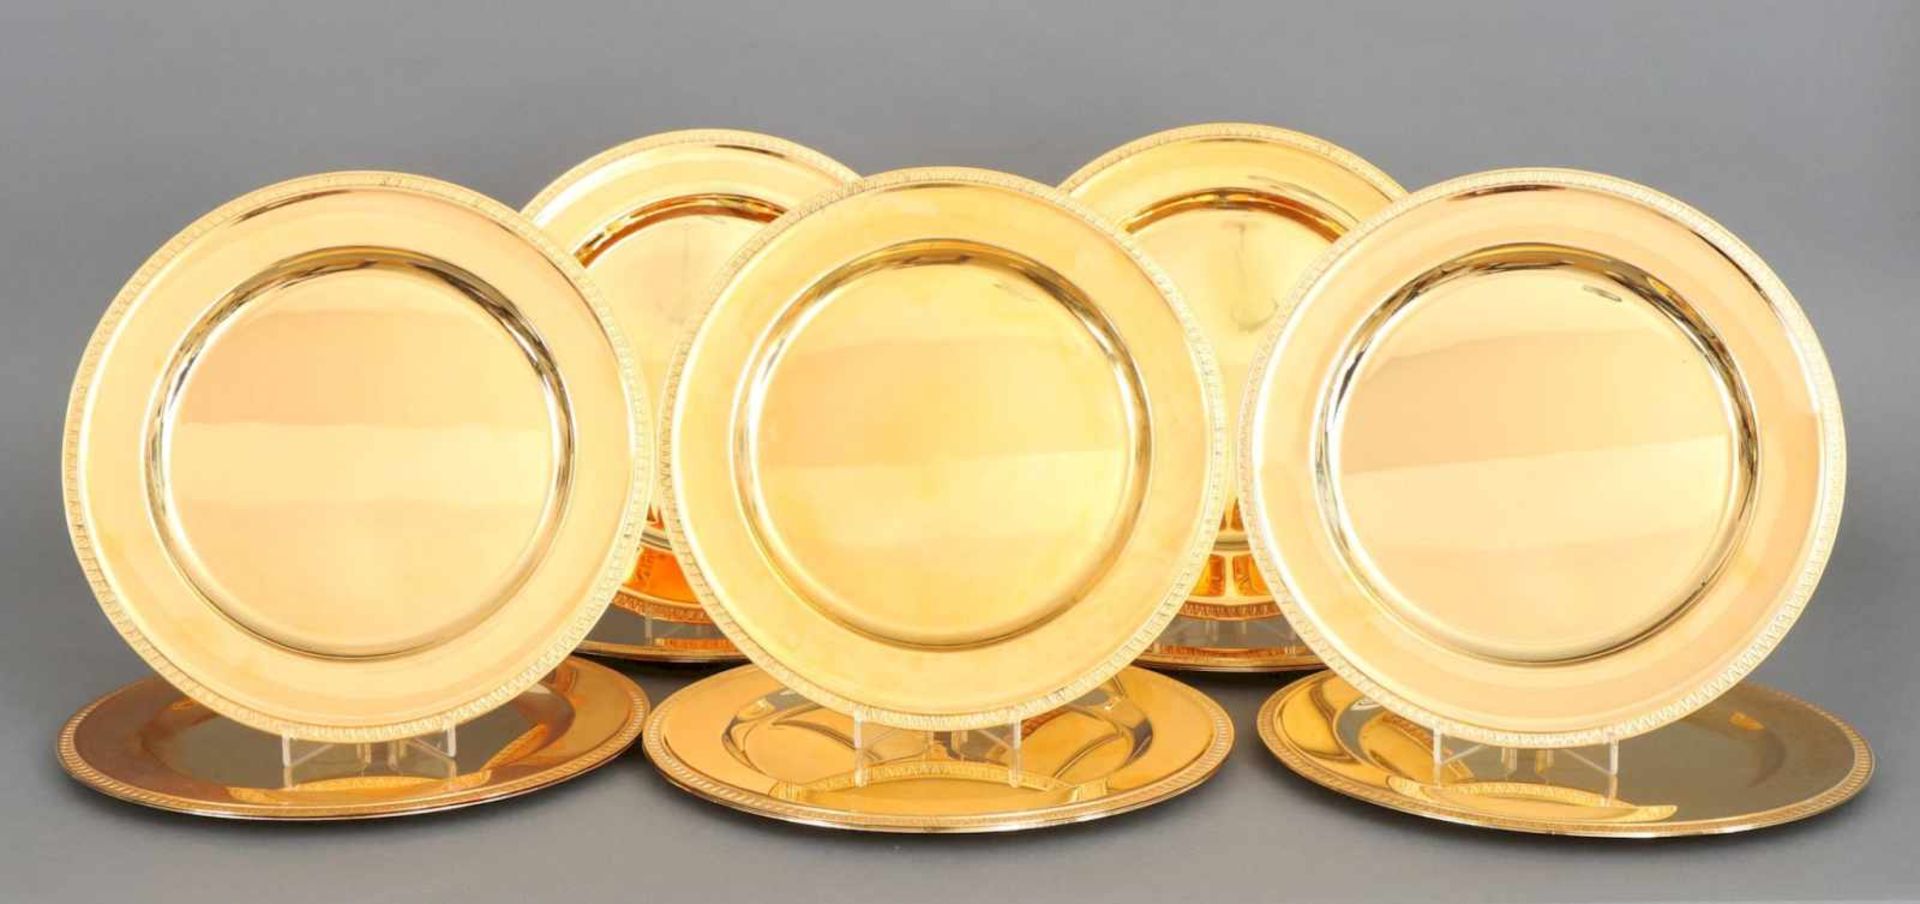 18 PlatztellerHersteller WOLFF, vergoldetes Metall, Deutschland, um 1980, runde Teller mit